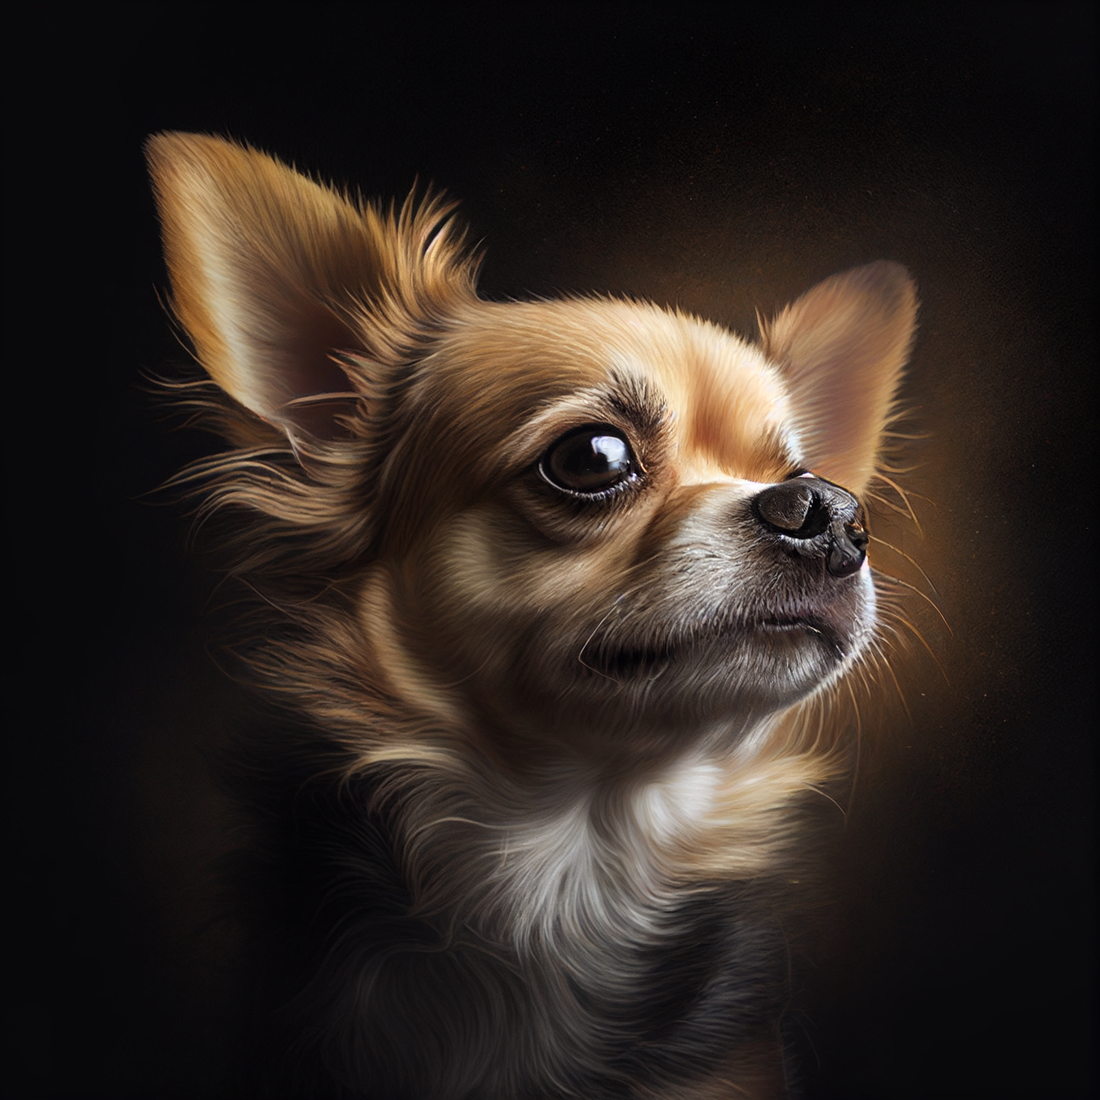 O Chihuahua - O Cão mais Pequeno do Mundo